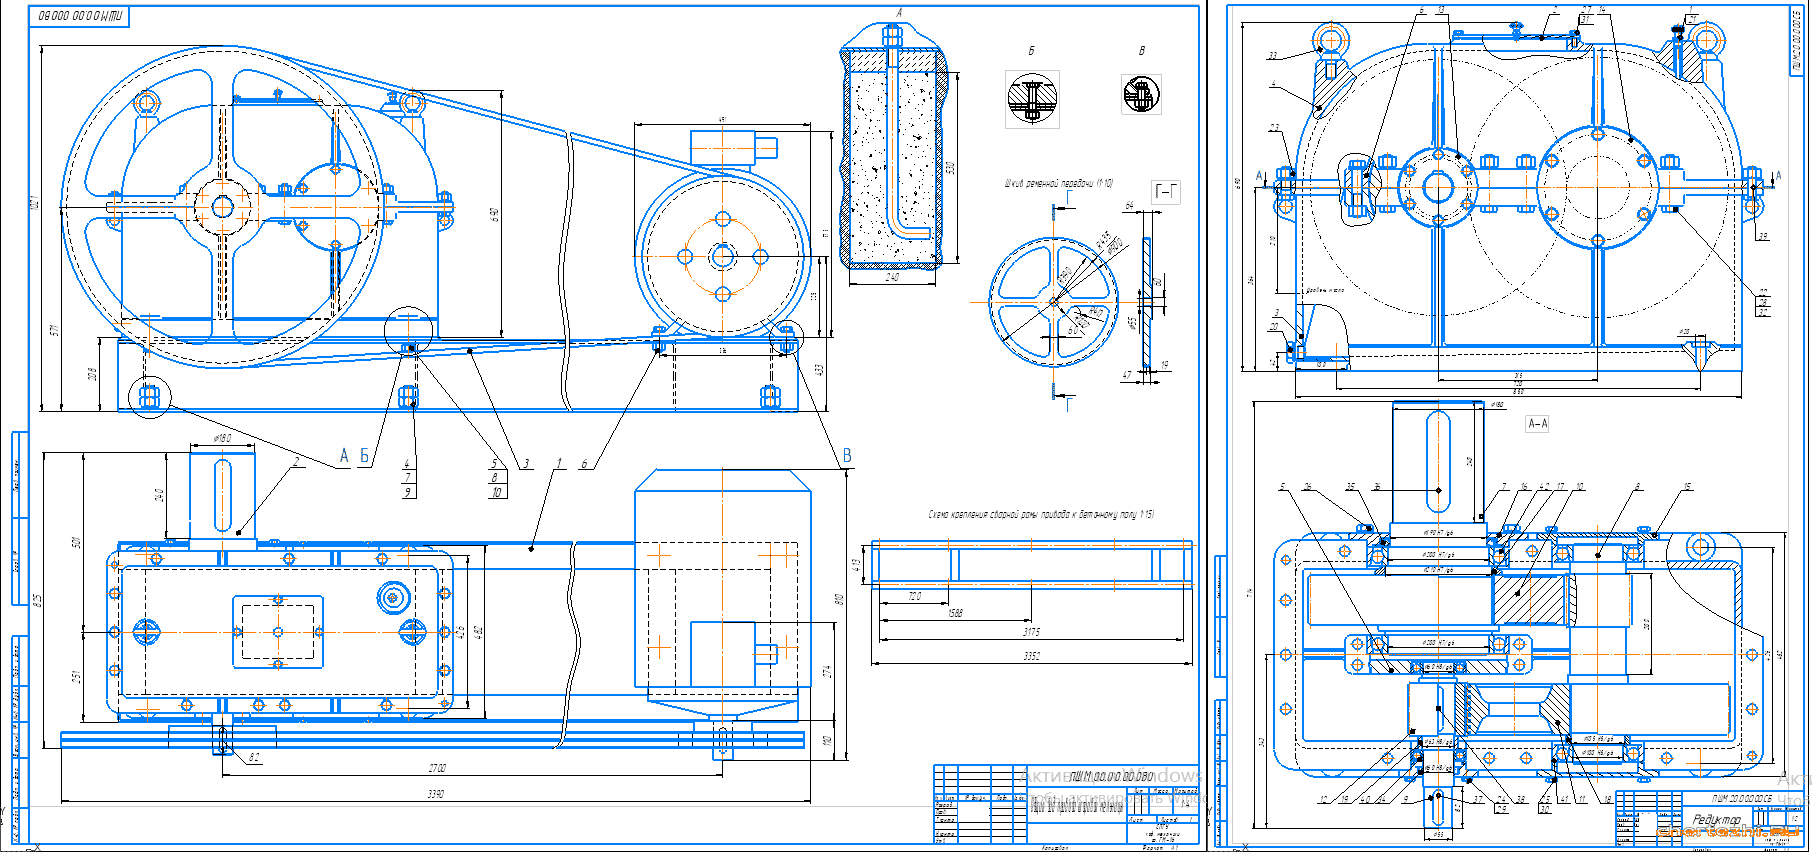 Курсовой проект - Расчет электромеханического привода шаровой мельницы (двухступенчатый соосный редуктор)